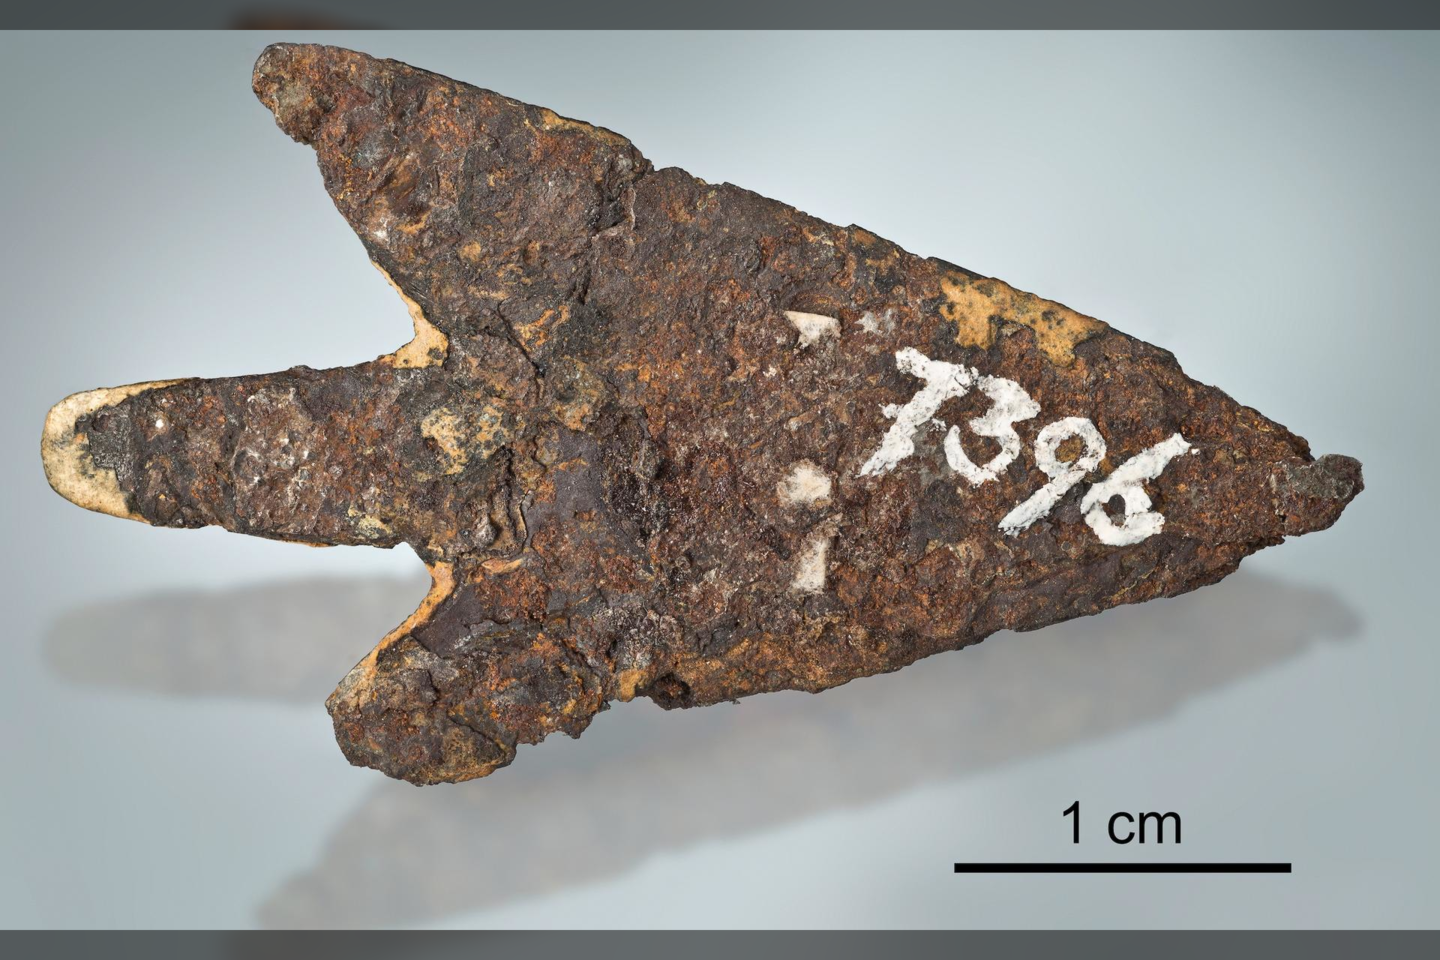  Nauja analizė atskleidė, kad šis daiktas nėra paprastas strėlės antgalis – jis pagamintas iš meteorito, kuris į Žemę nukrito prieš 3500 metų.<br> T. Schüpbacho nuotr.